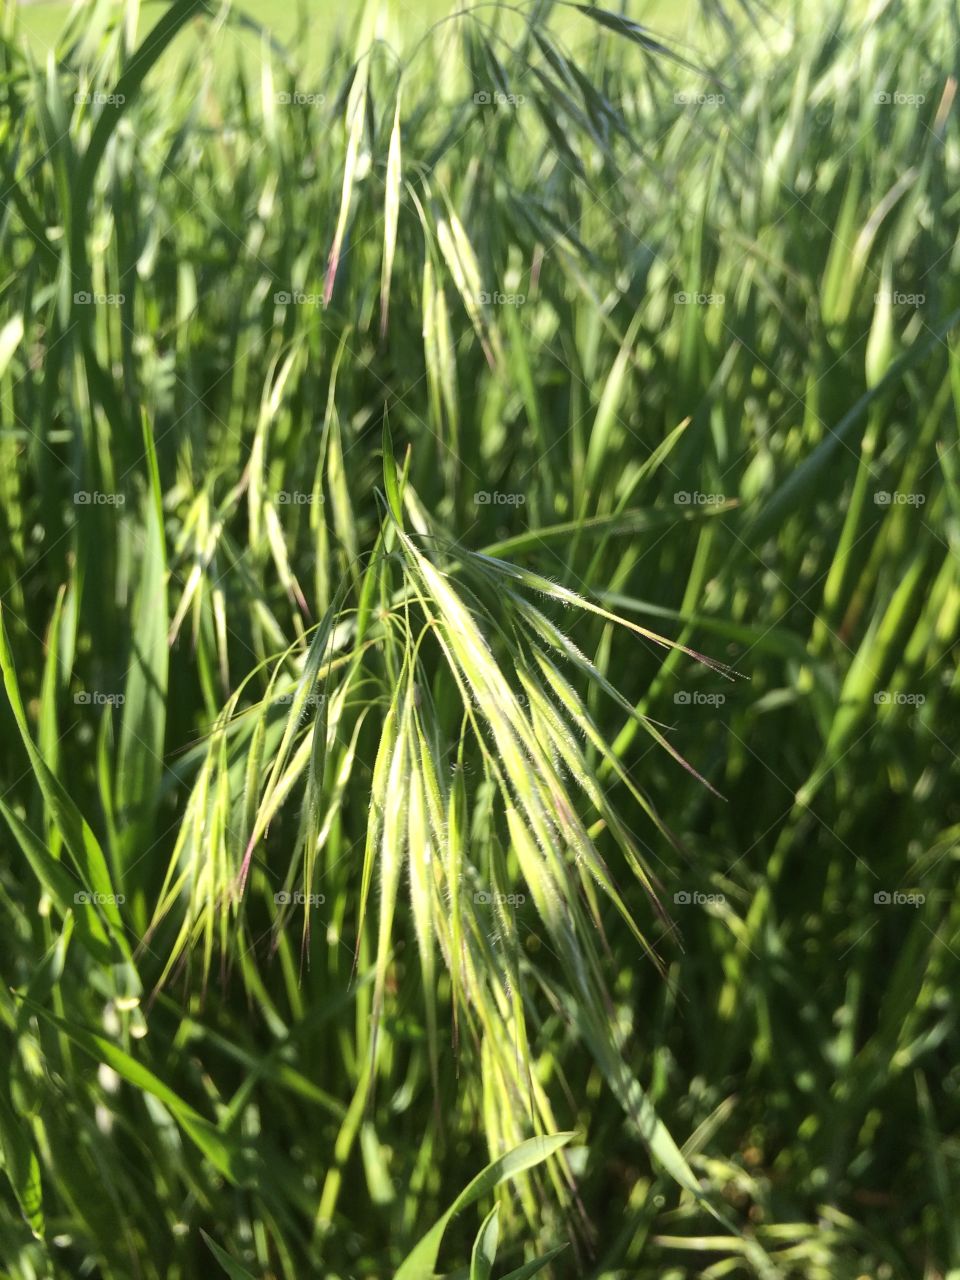 Grass blades. Grass seeds in a field 